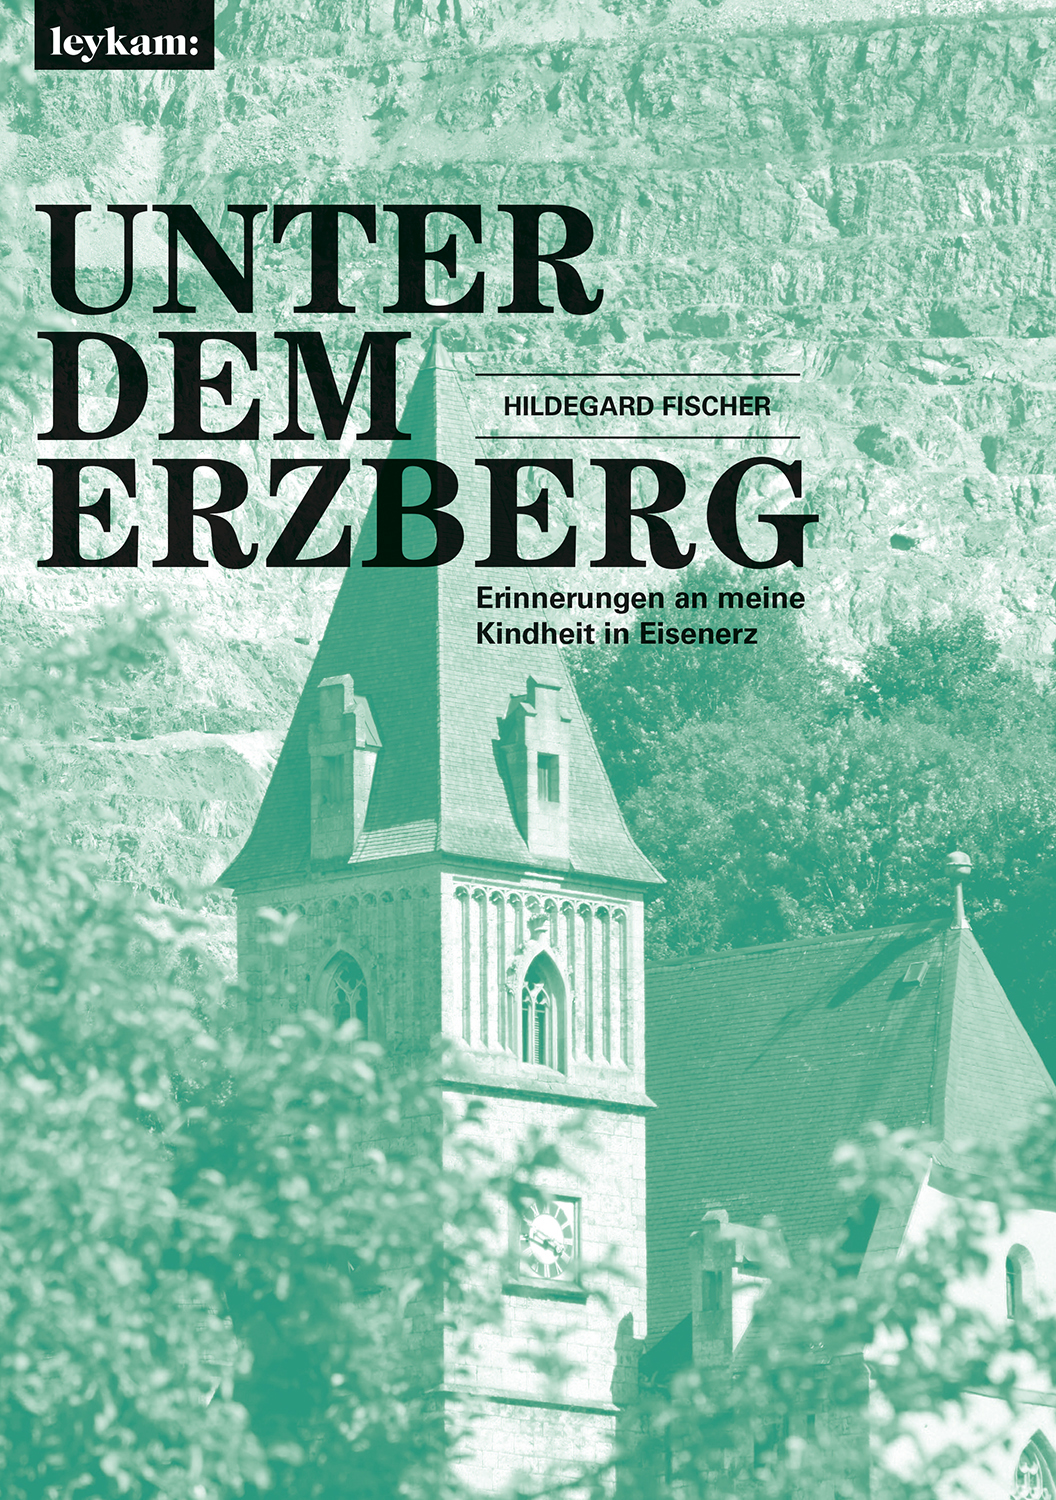 Hildegard Fischer / Unter dem Erzberg – Erinnerungen an meine Kindheit in Eisene - Bild 1 von 1